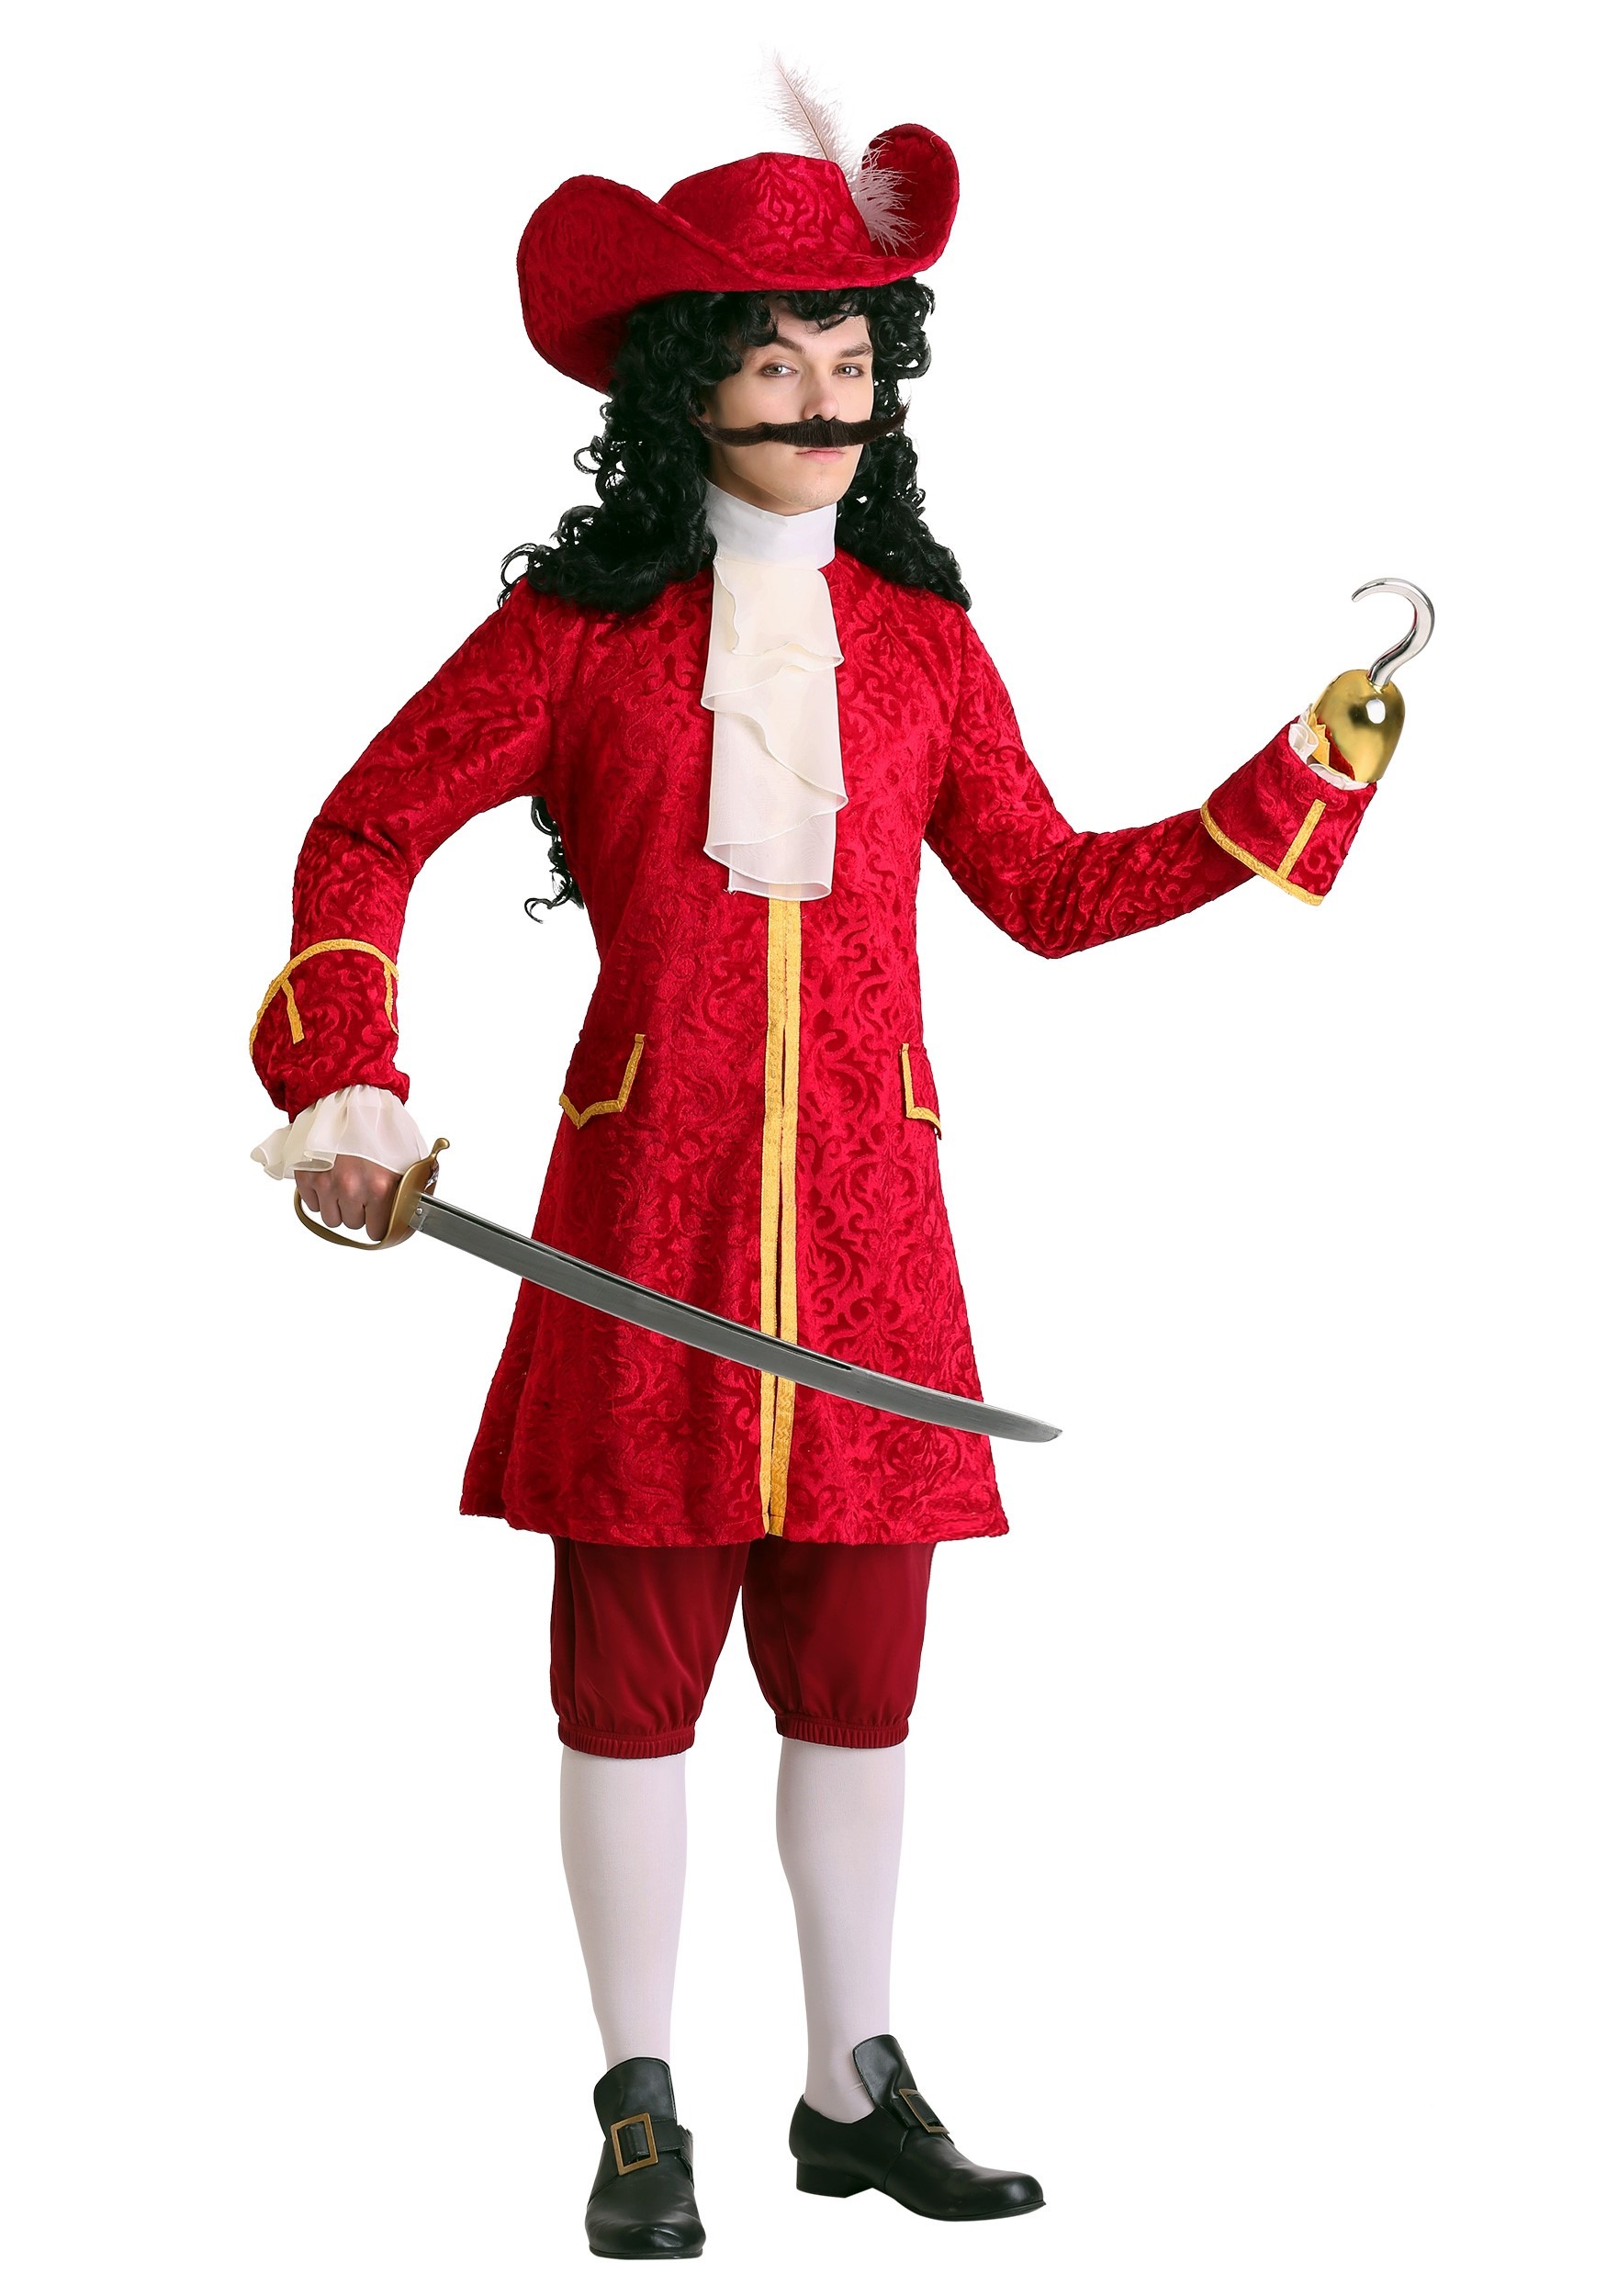 Photos - Fancy Dress FUN Costumes Plus Size Captain Hook Men's Costume Red FUN7054PL